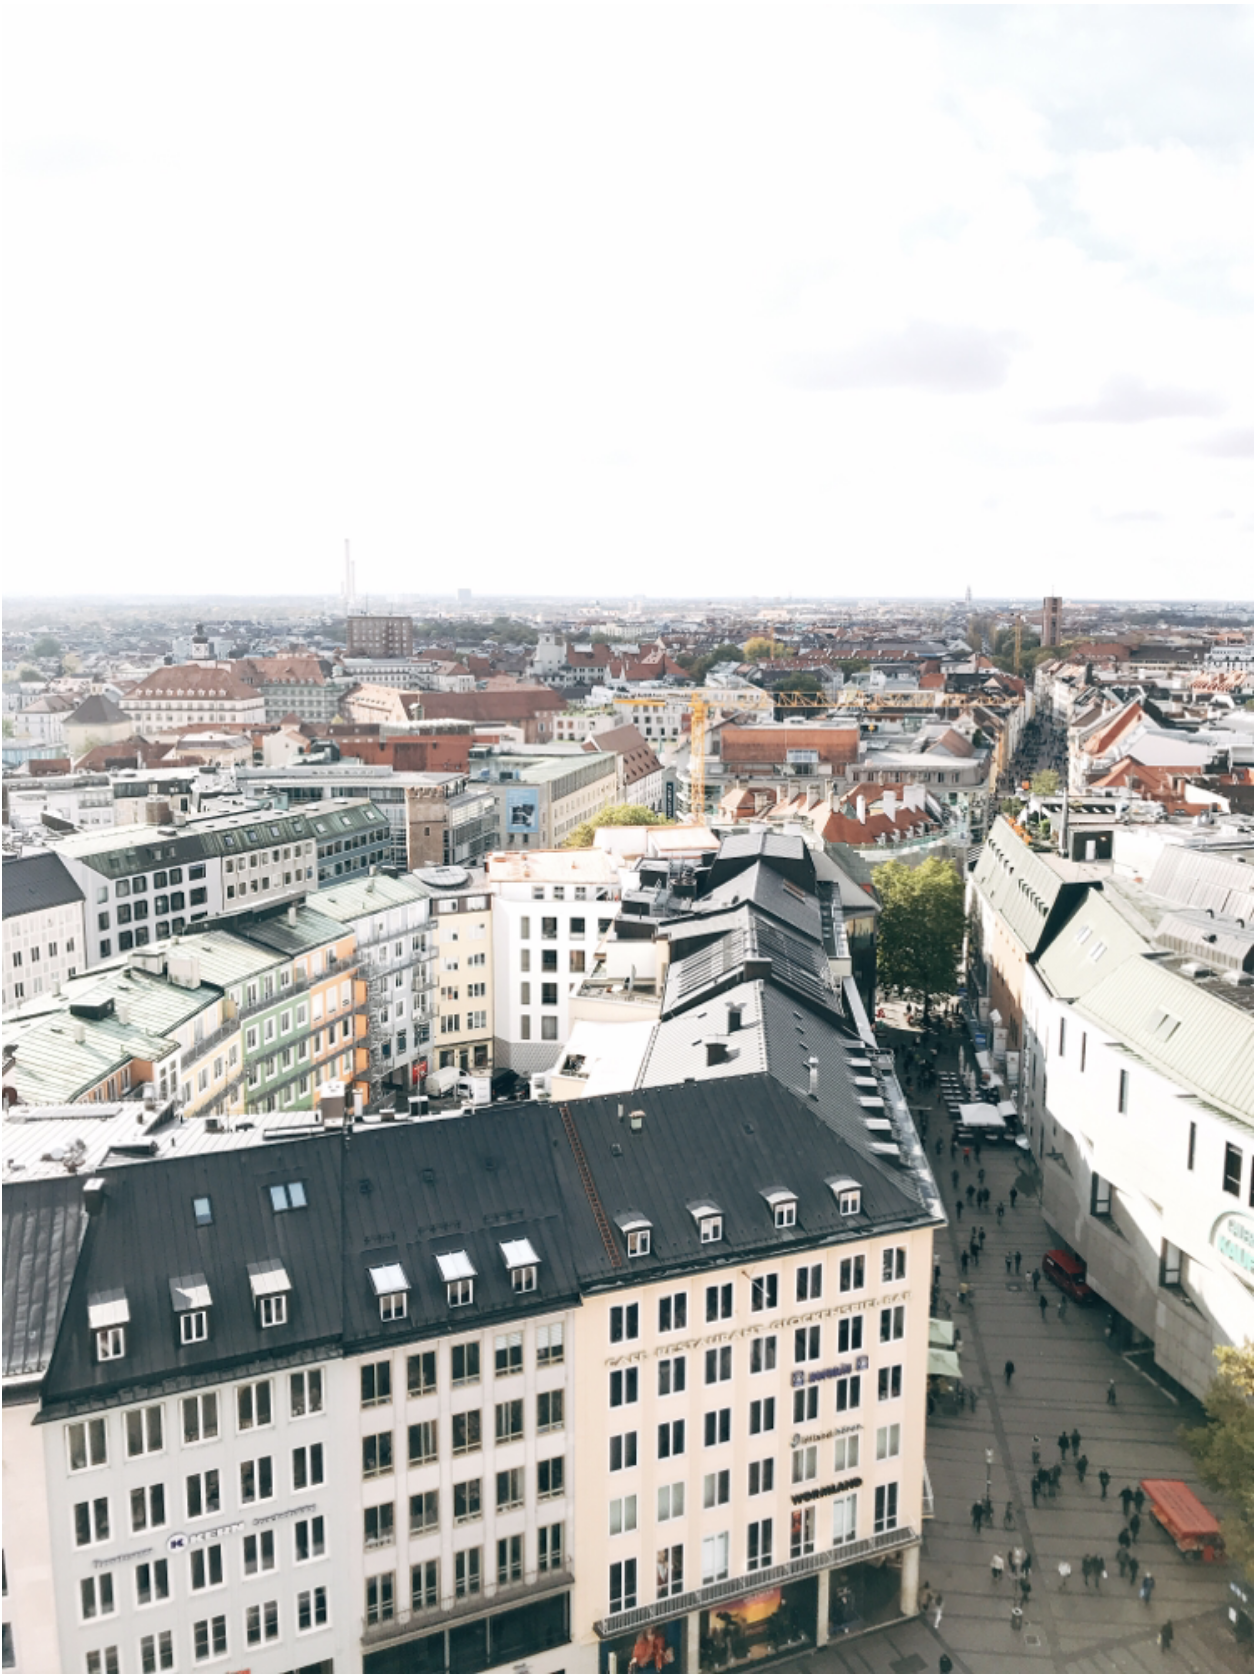 ミュンヘン市内観光中 新市庁舎からの眺め